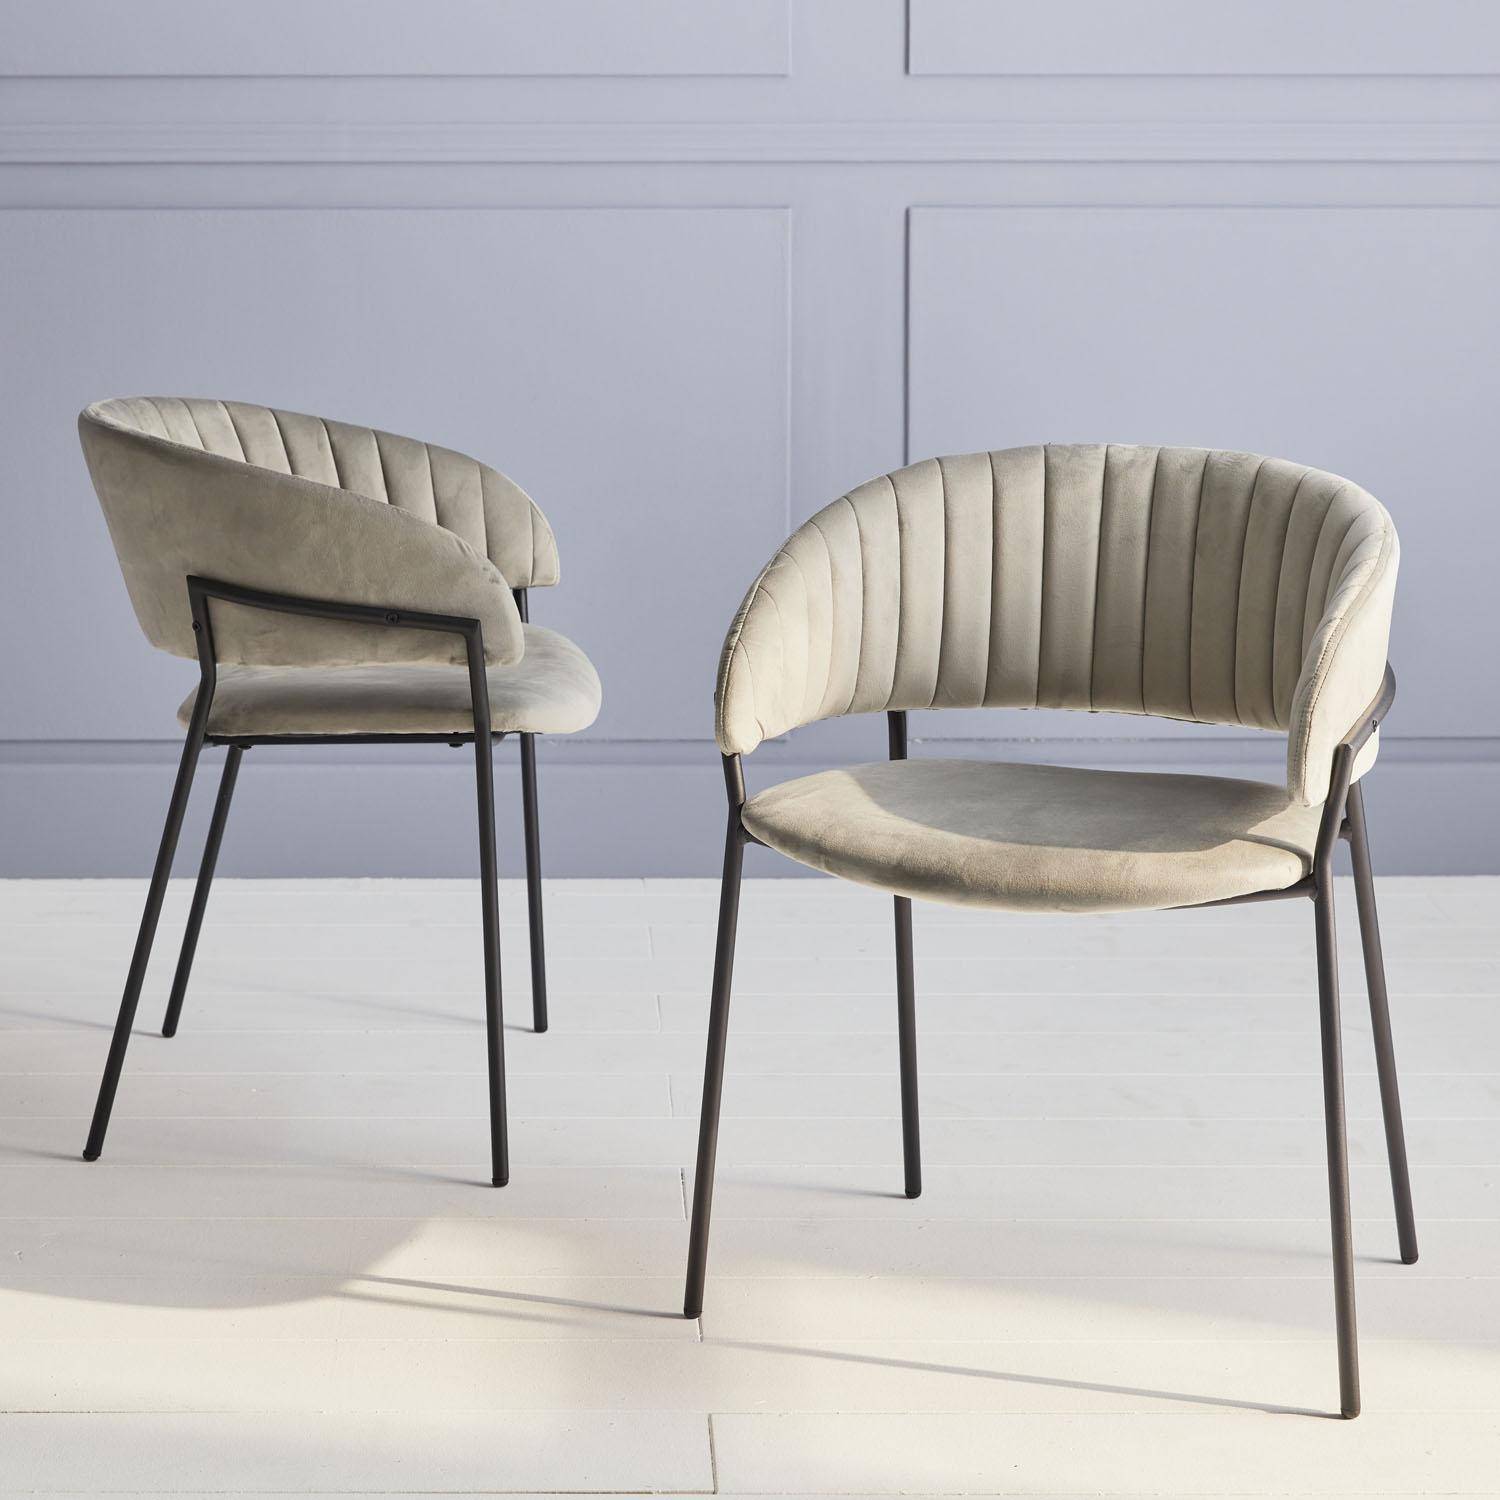 Set van 2 design stoelen, zitting van grijs velours, 59x55x73.5cm Photo2